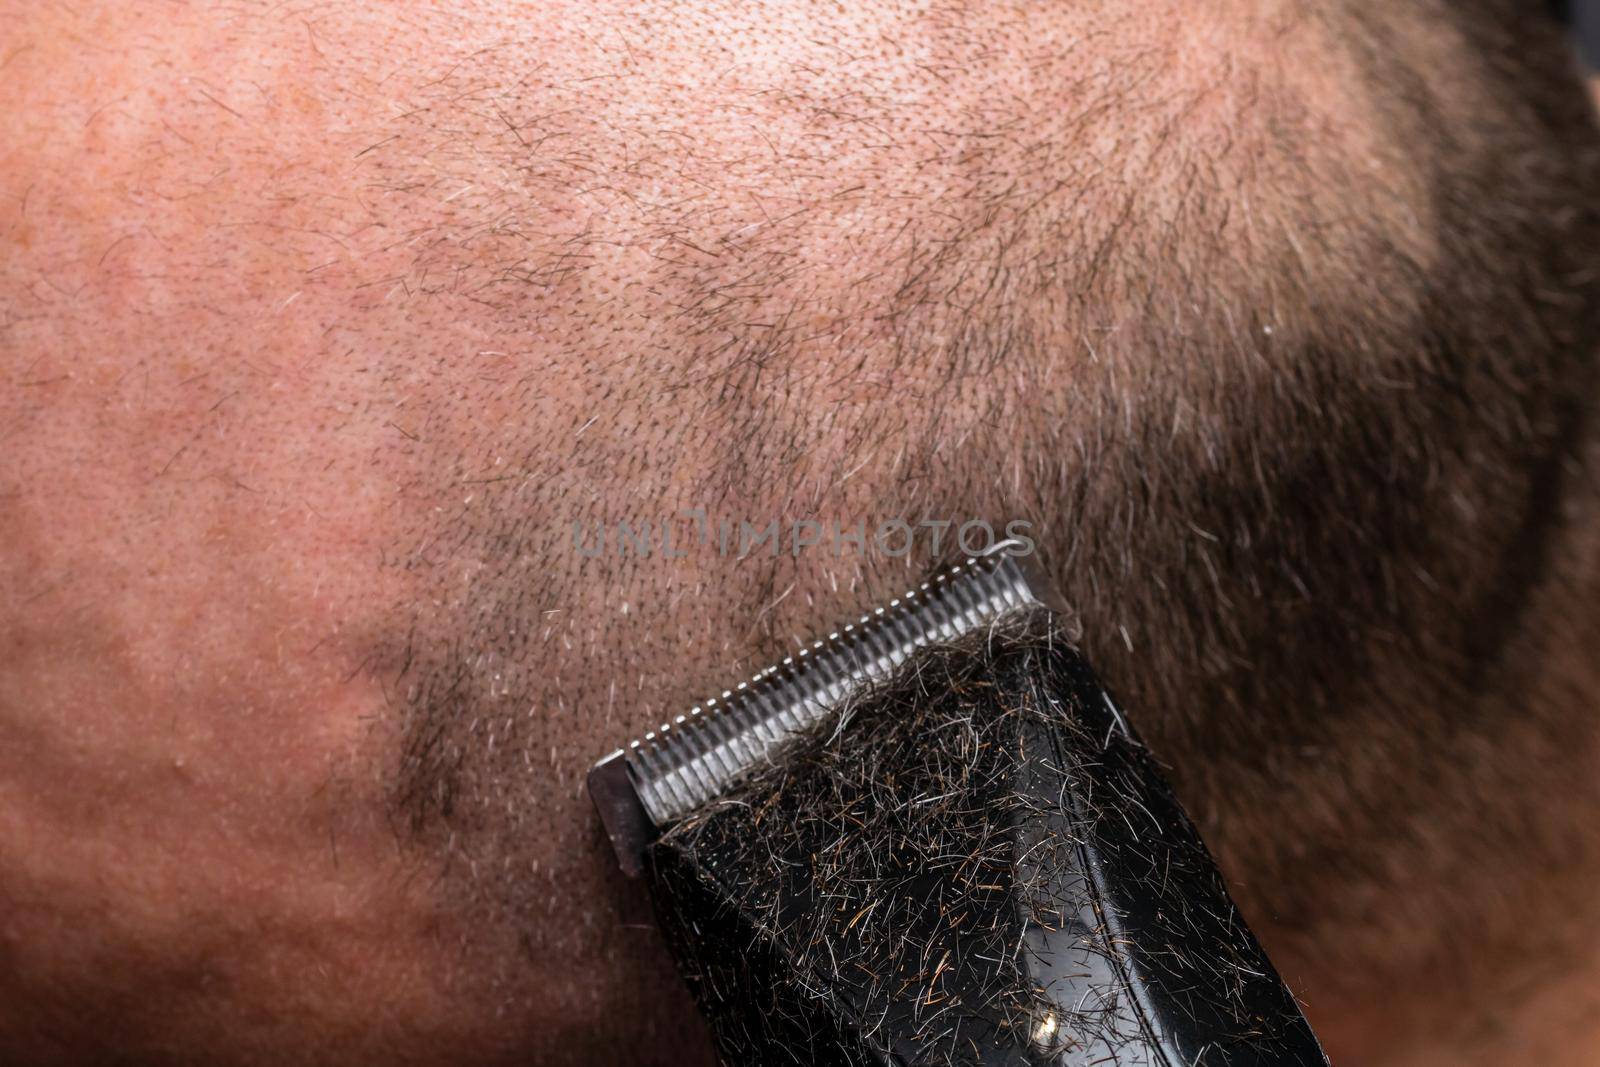 Man shaving or trimming his hair using a hair clipper by vladispas